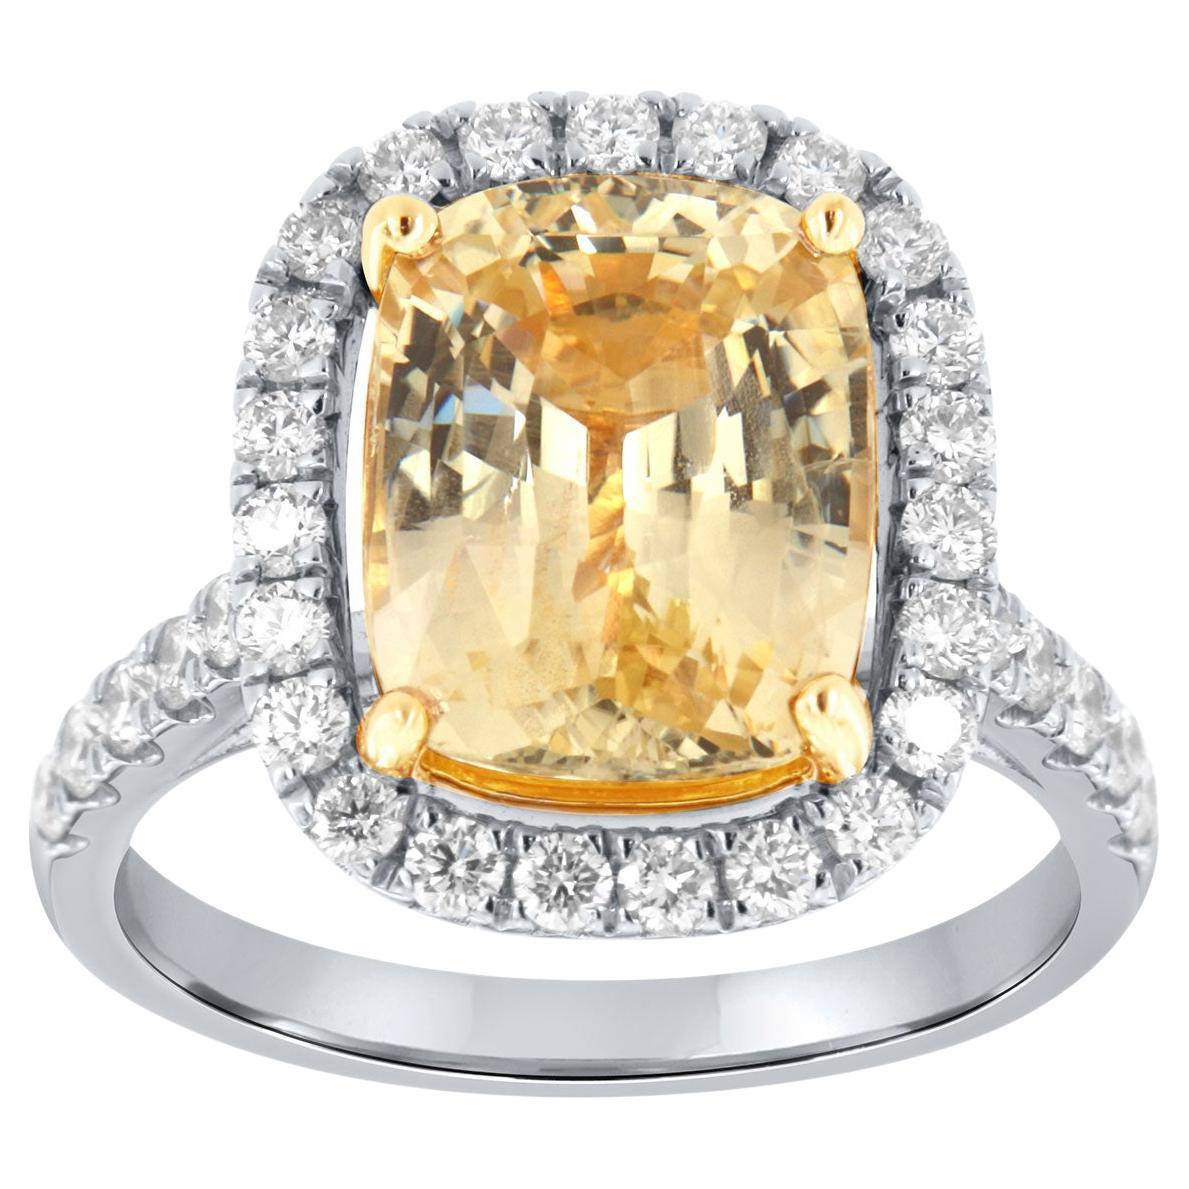 Bague halo de diamants et saphir jaune coussin allongé de 6,55 carats, certifié GIA, sans chaleur